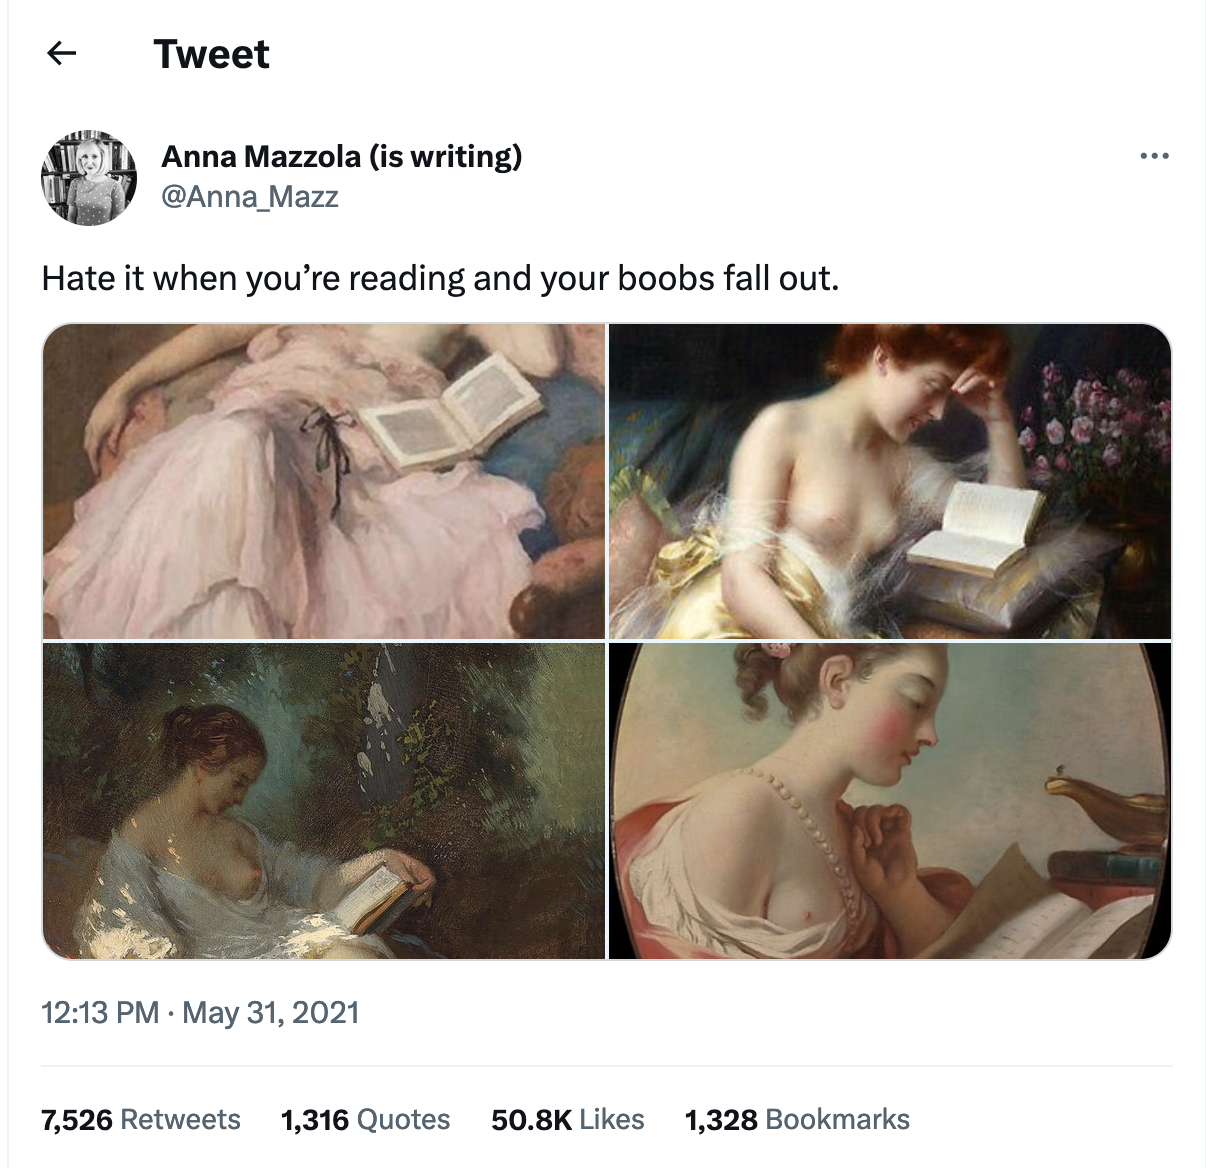 Tweet of paintings featuring women reading